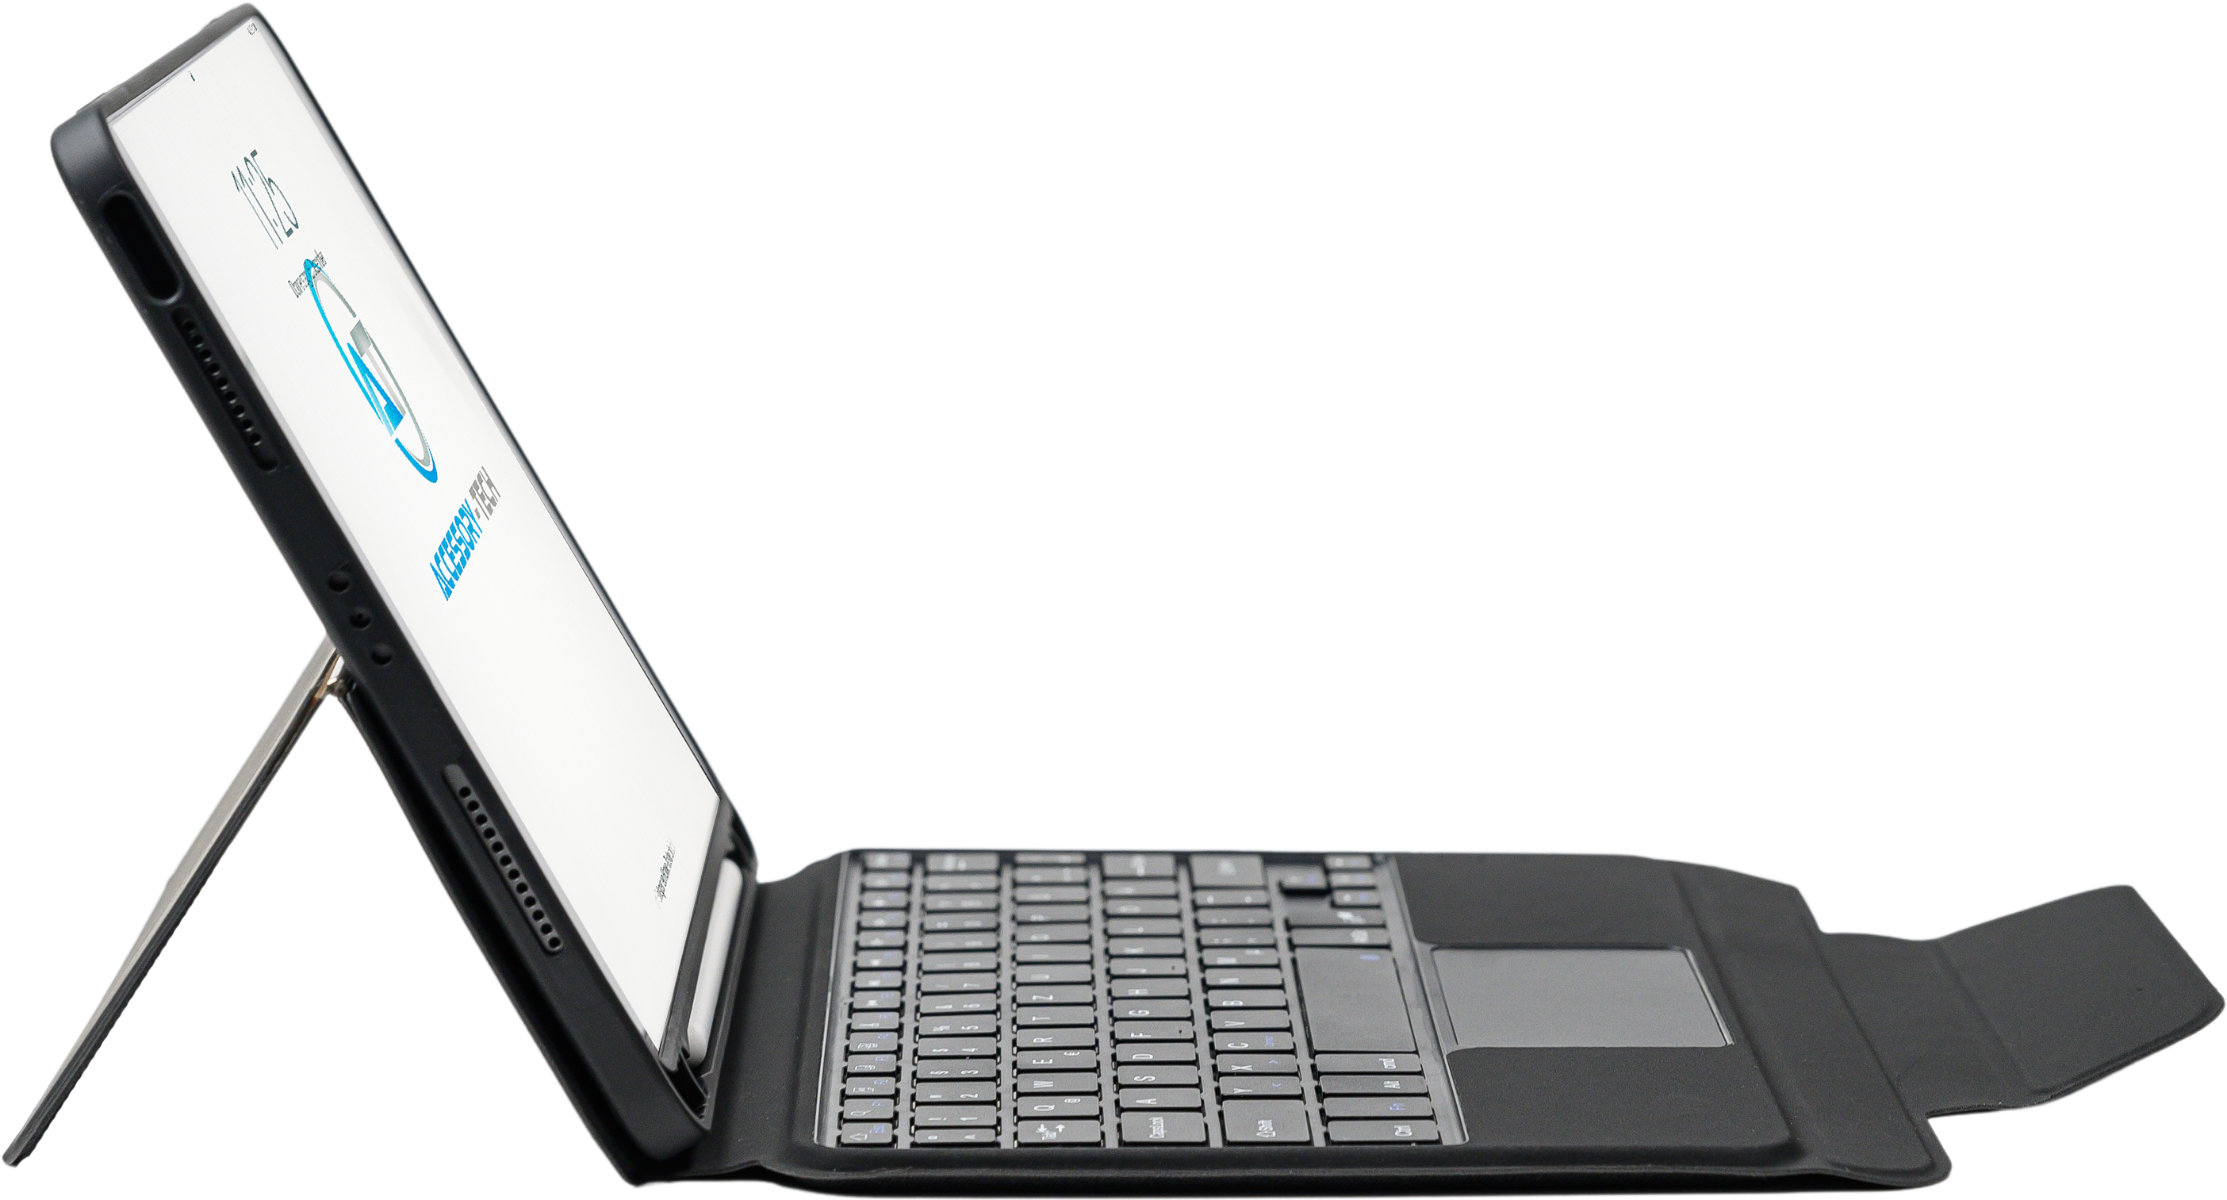 Eigenschaften:      Tastatur mit 78 Tasten     14 Funktionstasten     QWERTZ Tastaturlayout     USB-C Anschluss, Ladekabel im Lieferumfang enthalten     Kabellose Bluetooth 5 Verbindung     Standby Zeit bis zu 100 Tage     Nutzungsdauer bis zu 100 Stunden